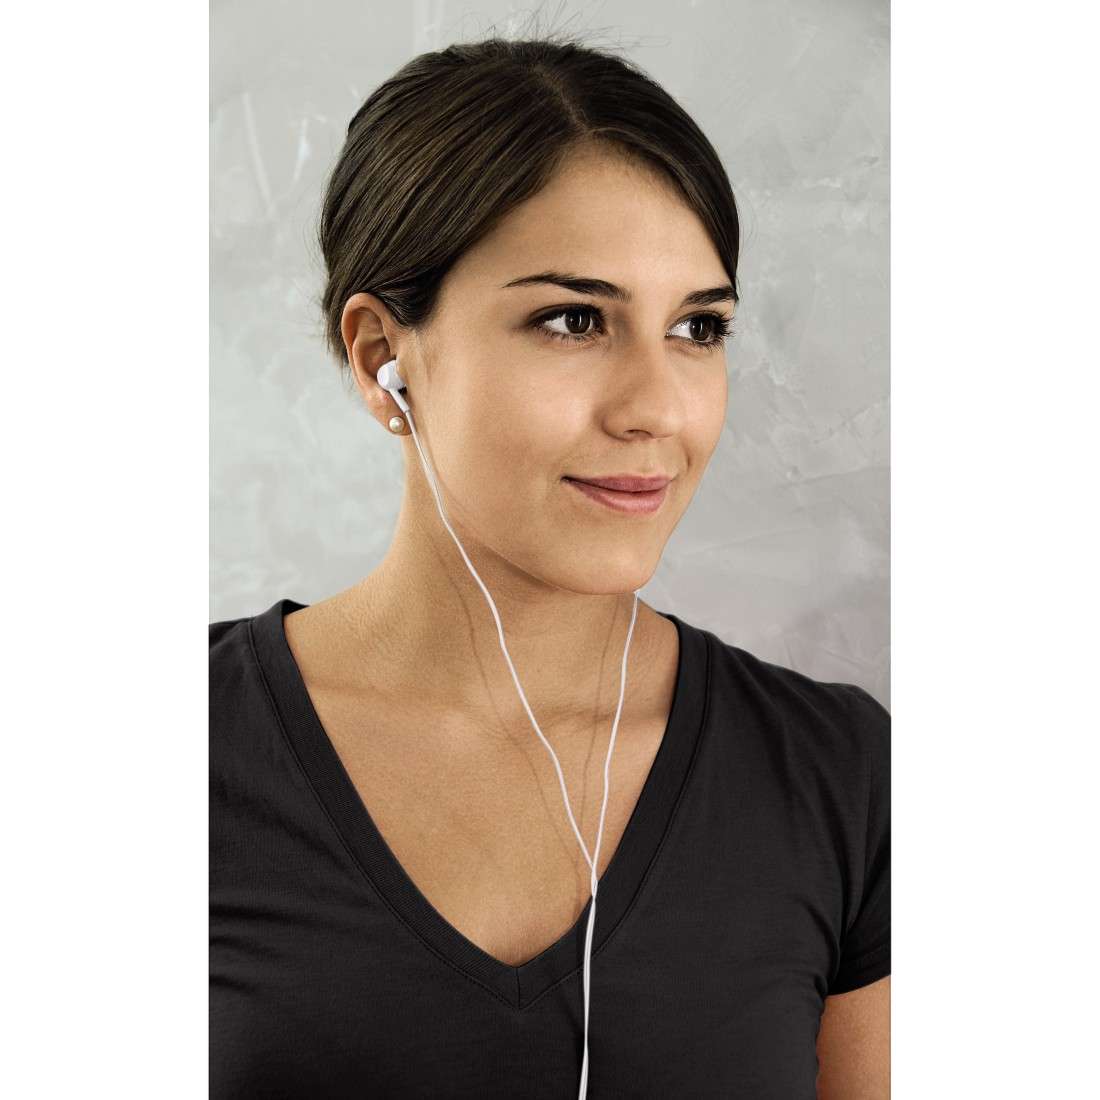 EAR3005W Kopfhörer, In-Ear, Mikrofon, Weiß